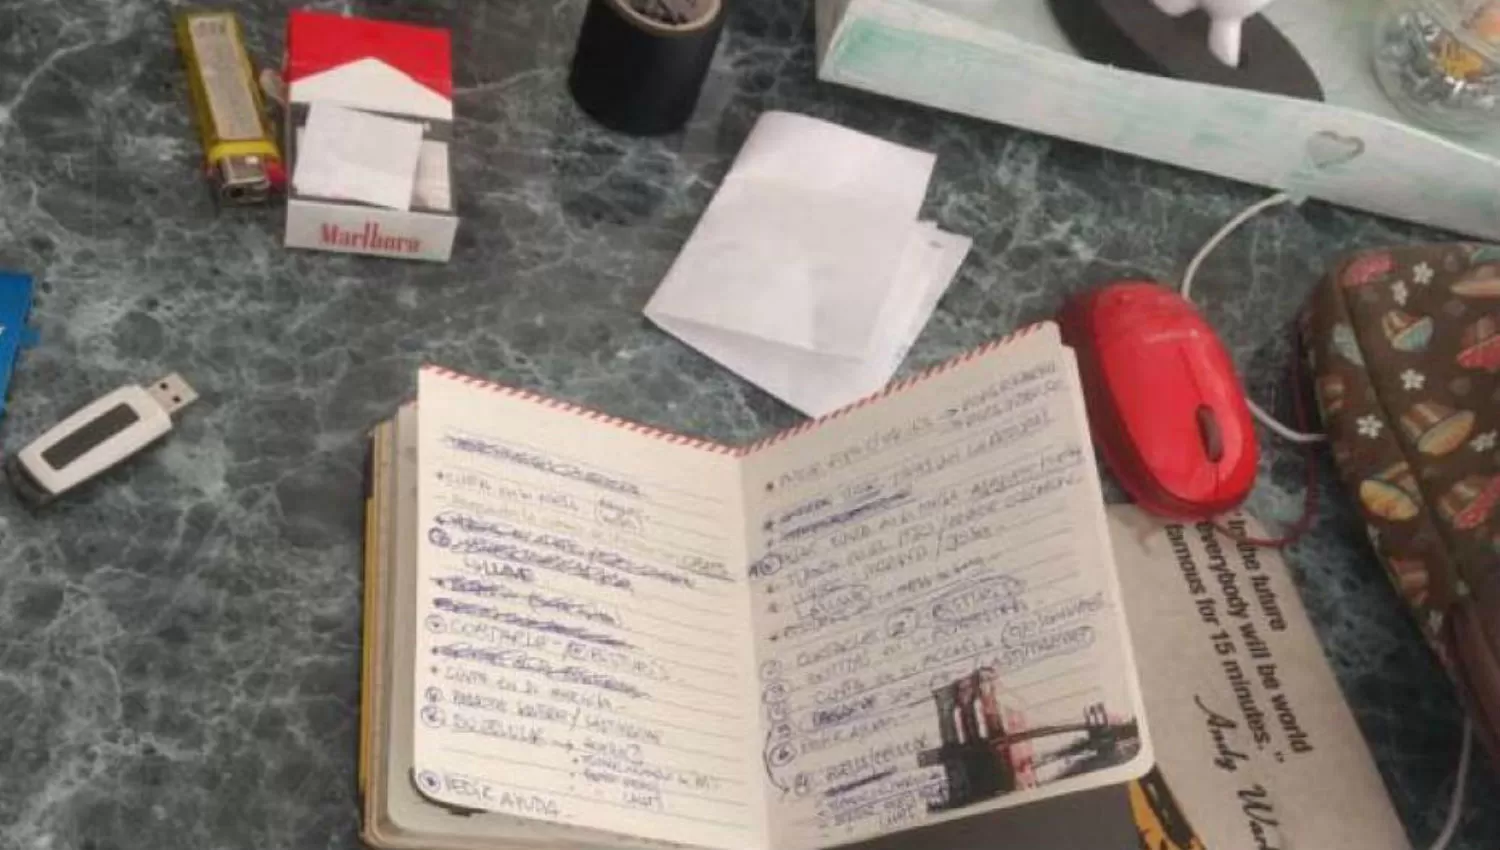 HORROR. Un cuaderno con anotaciones como cortale y bisturi, entre otras cosas, se halló en el departamento. GENTILEZA LAVOZ.COM.AR

